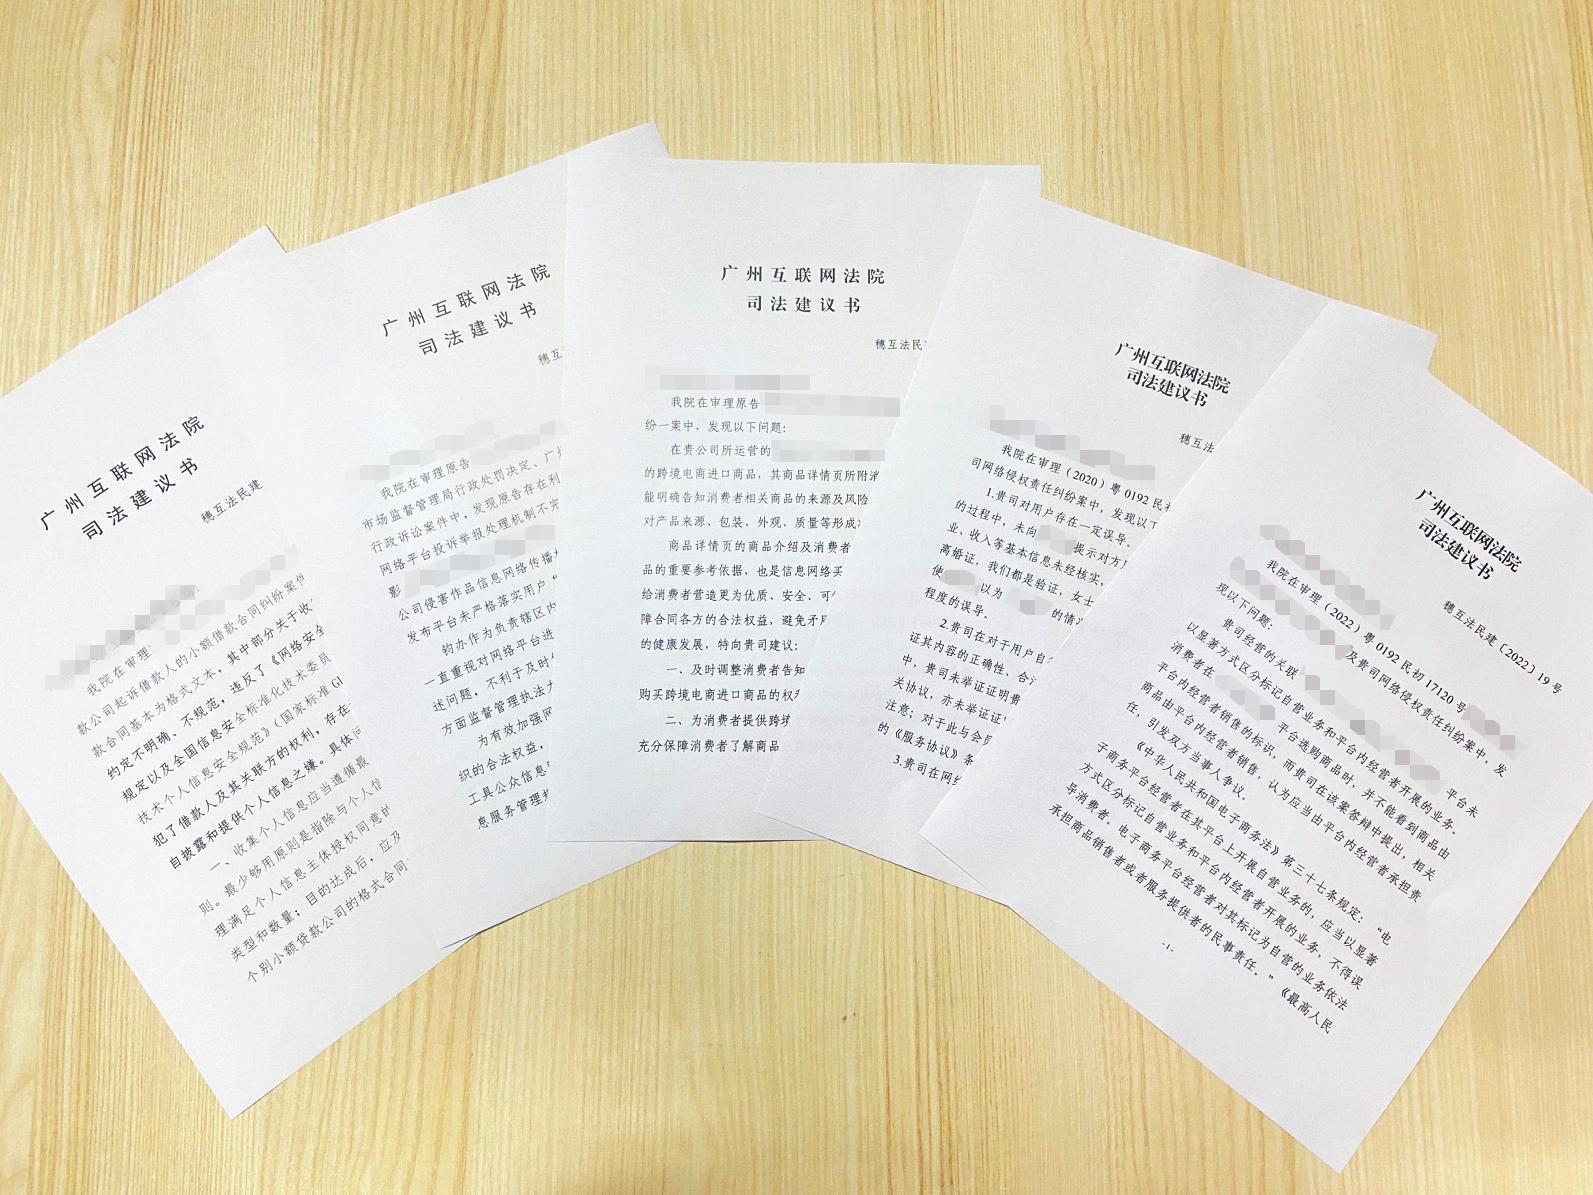 半岛体育中国网站:广州互联网法院设置五年来以法令发起为抓手自动插足搜集空间管造——以“幼瘦语”鼓励社会管造“大力动”(图1)